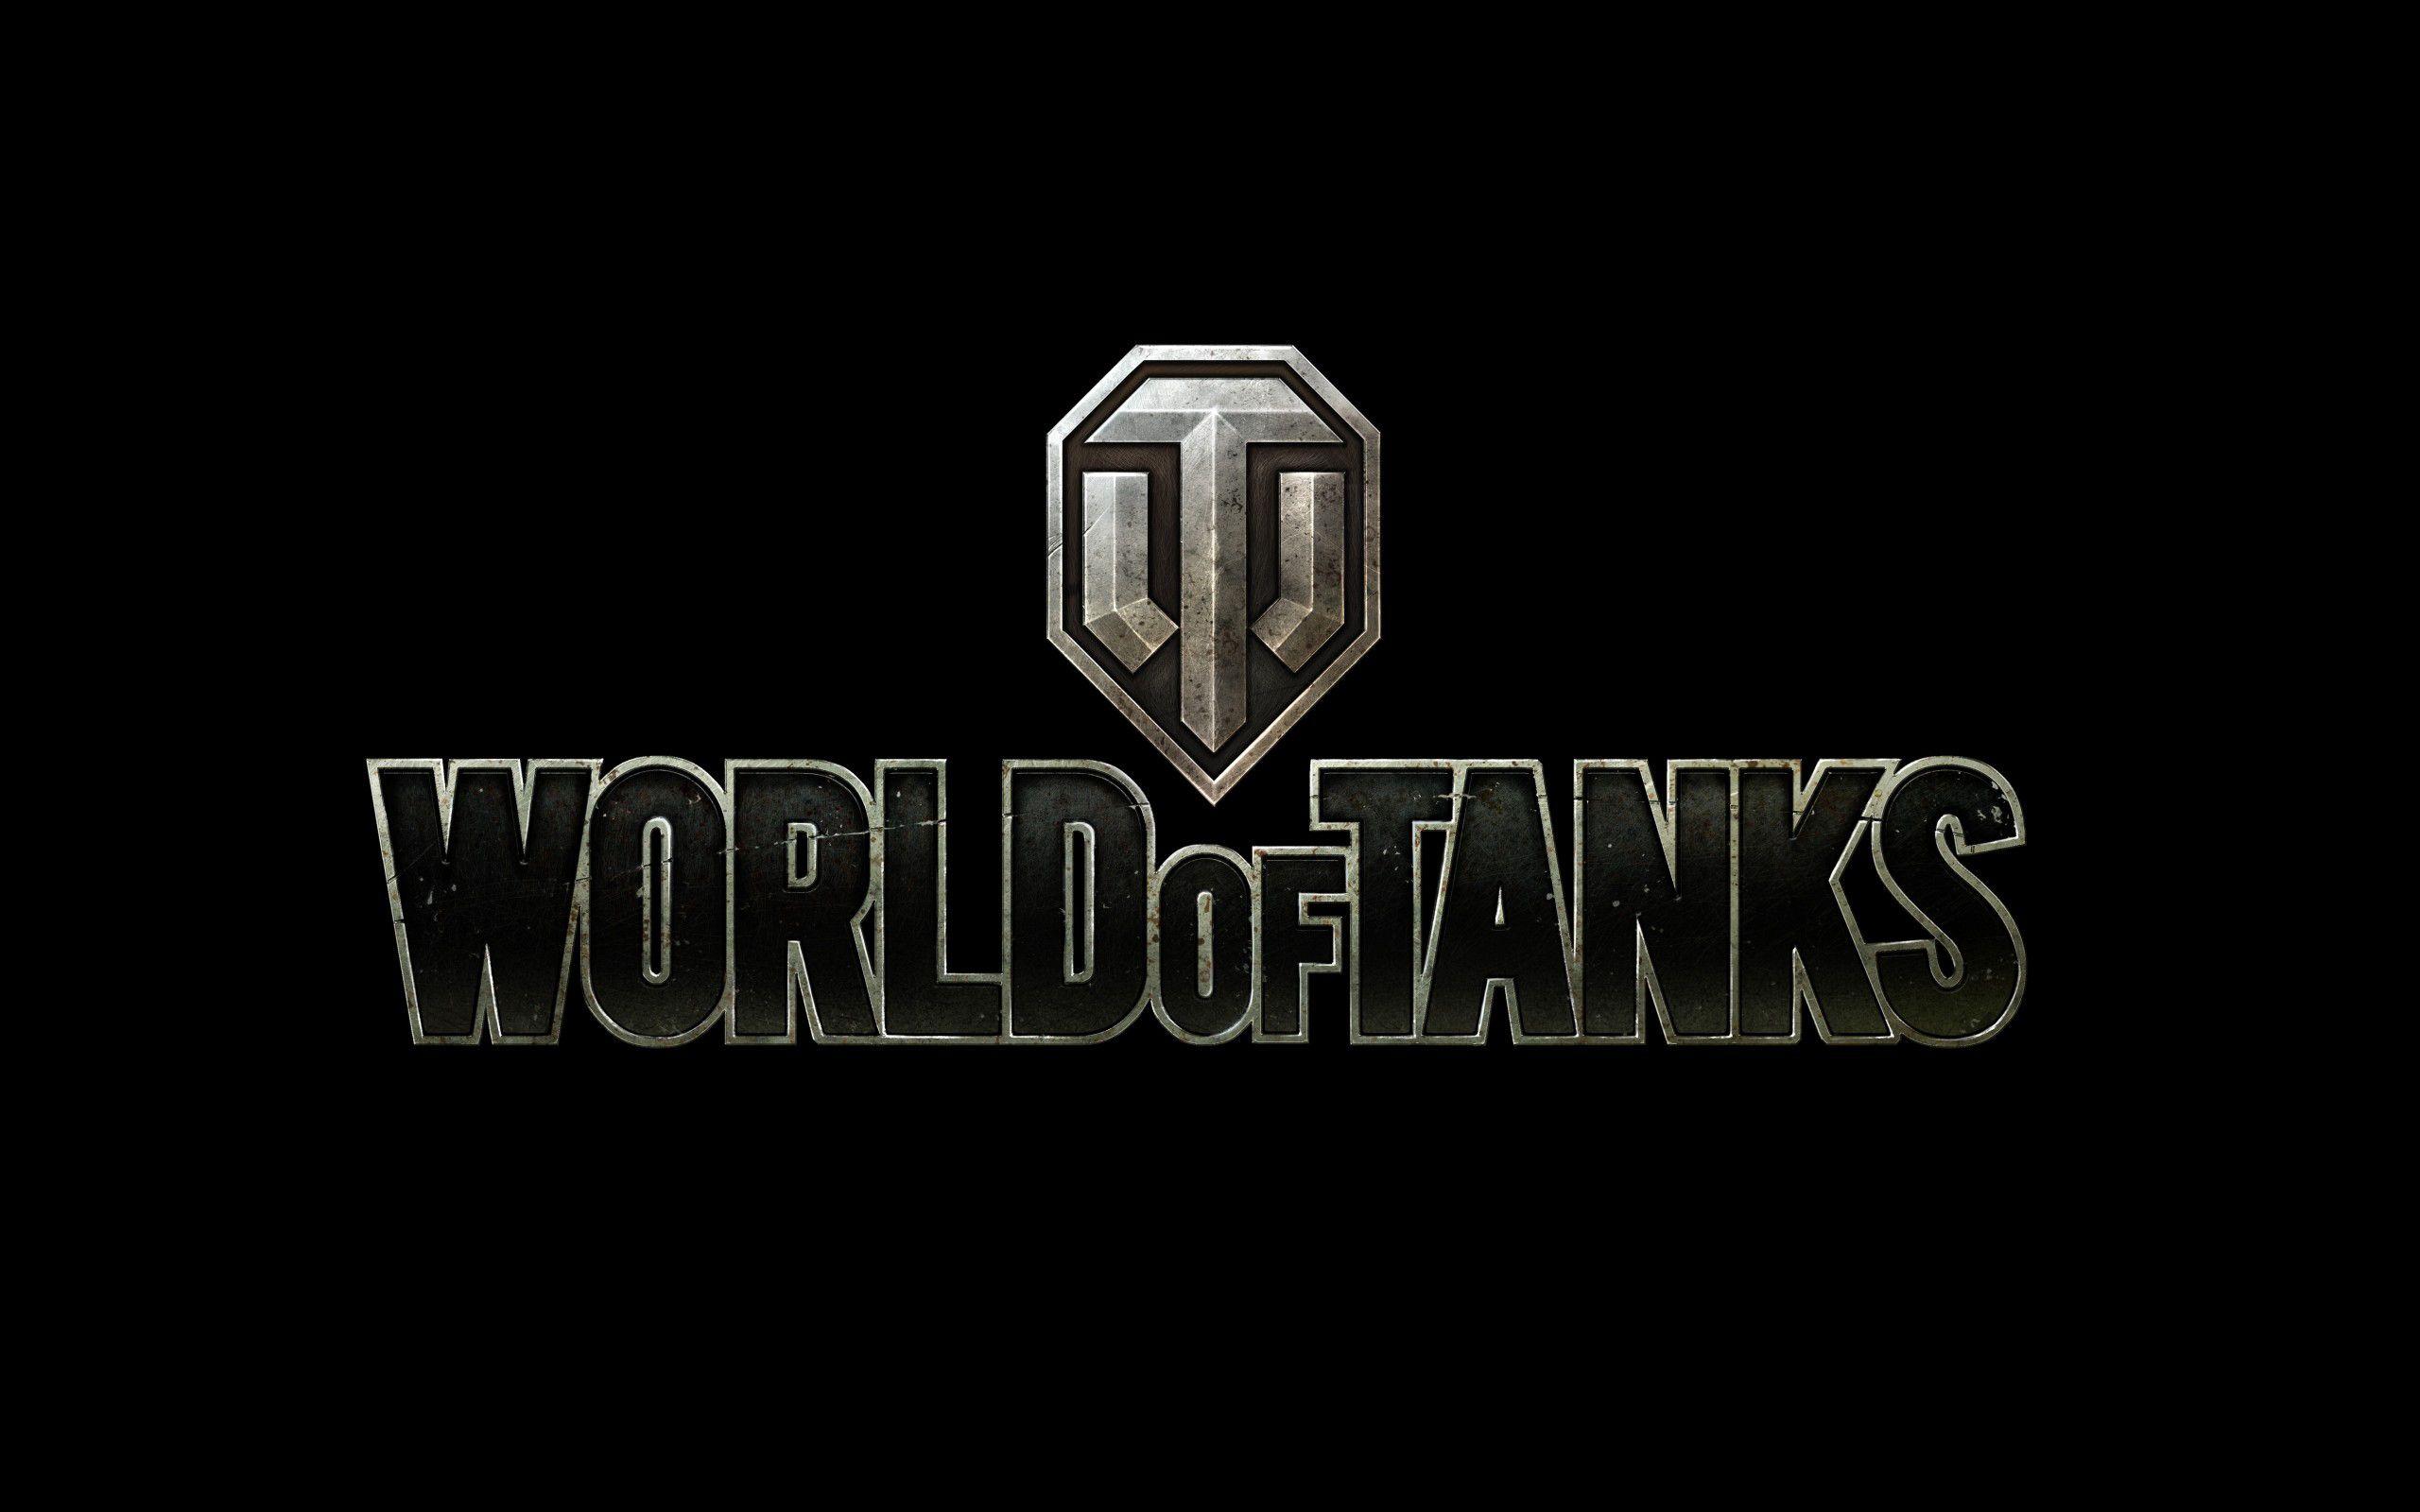 Tanks Logo - Wallpapers World of Tanks Logo Emblem Games